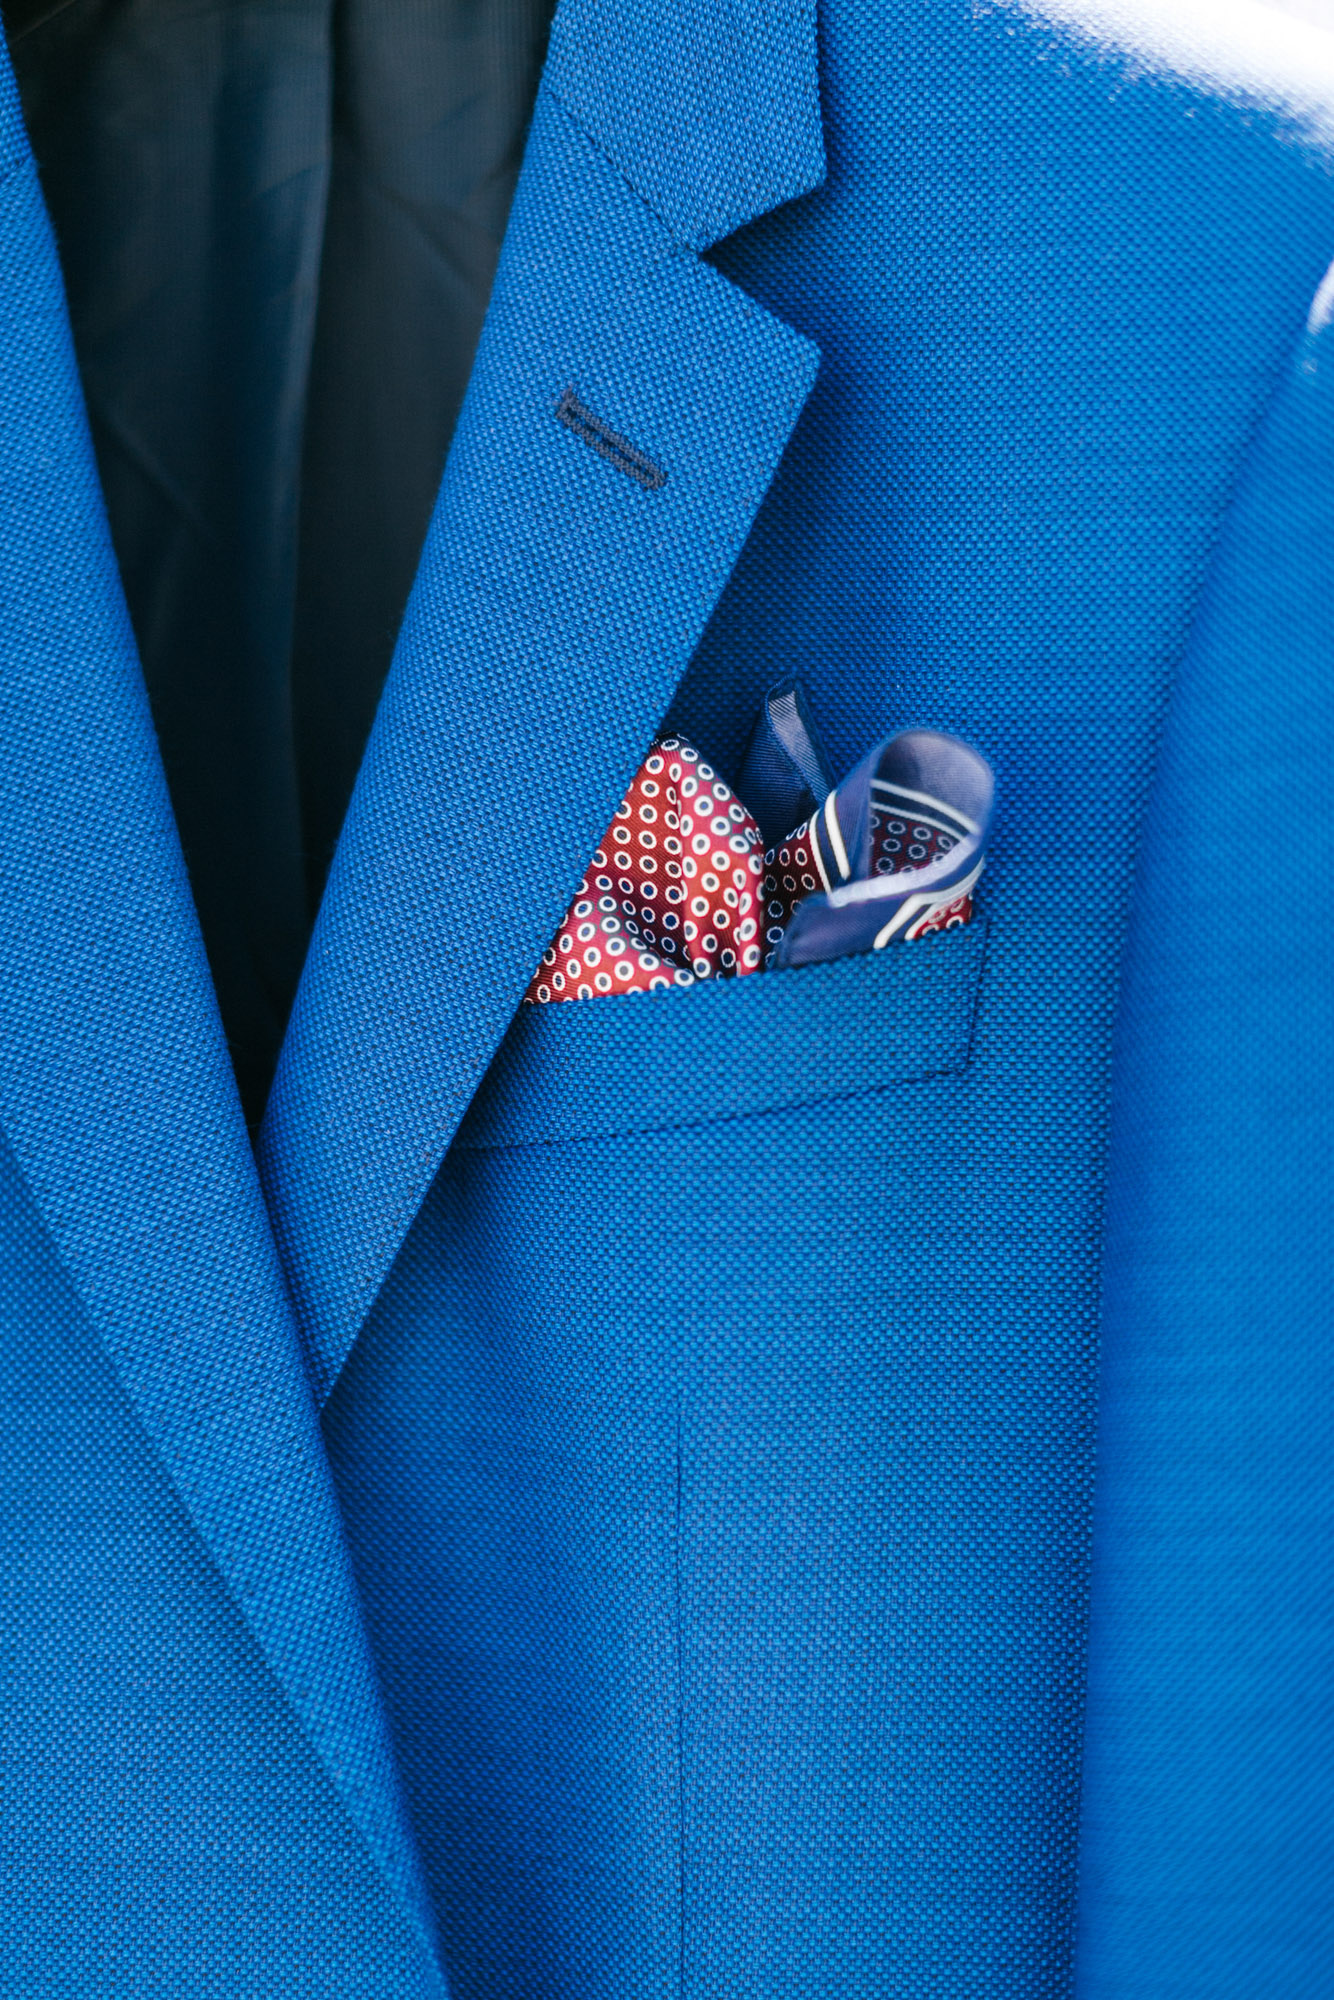 Groom's details for blue and white Santorini wedding.